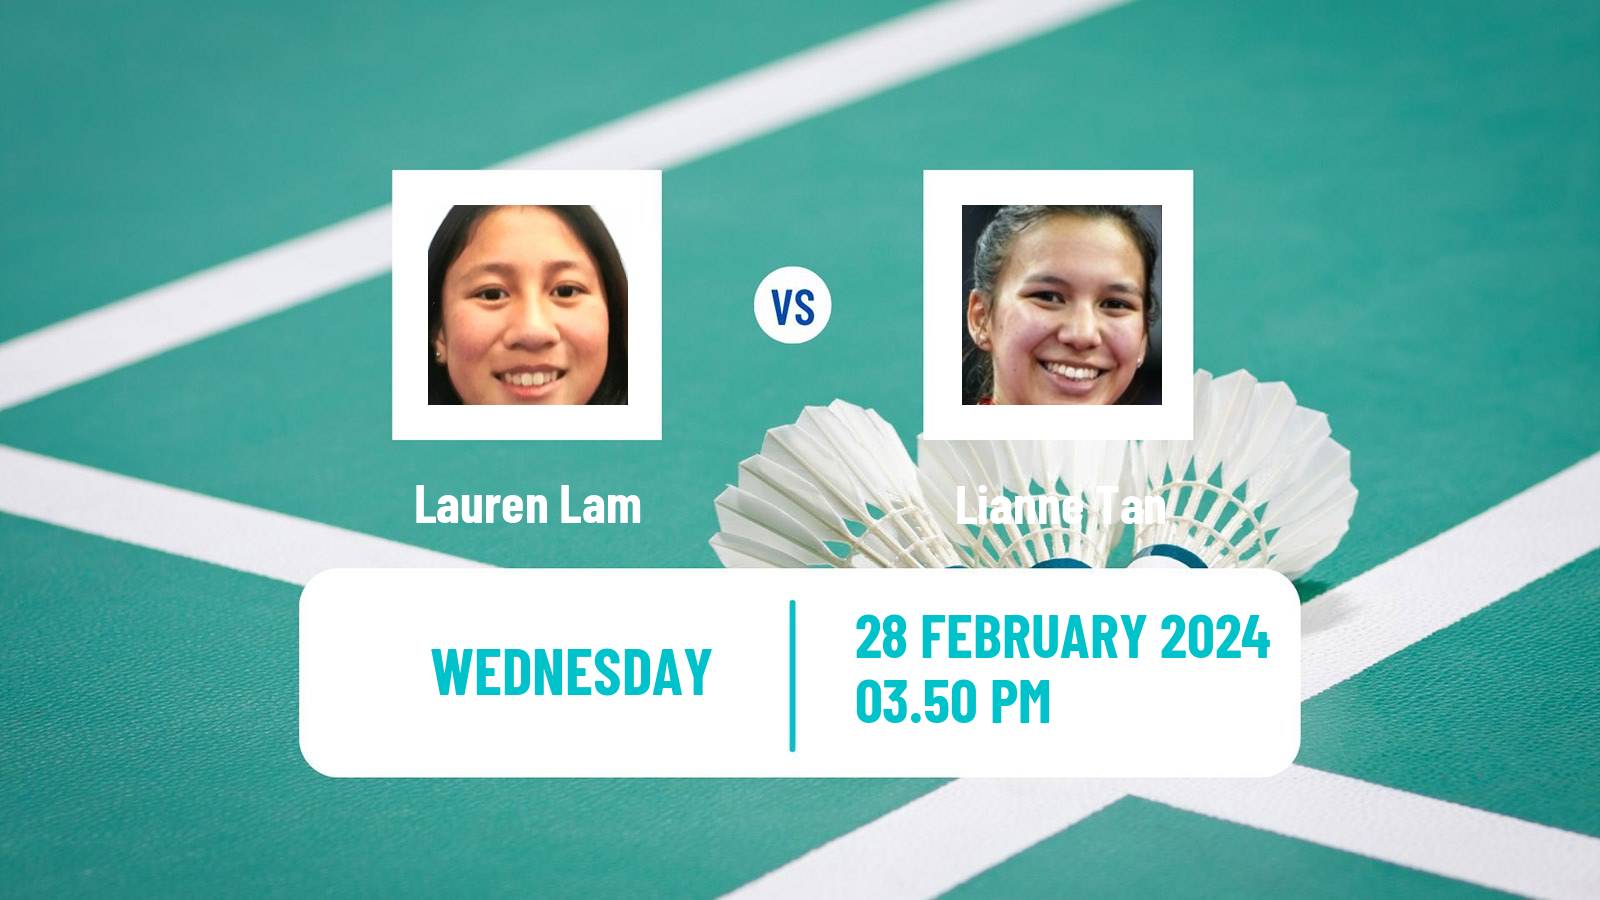 Badminton BWF World Tour German Open Women Lauren Lam - Lianne Tan